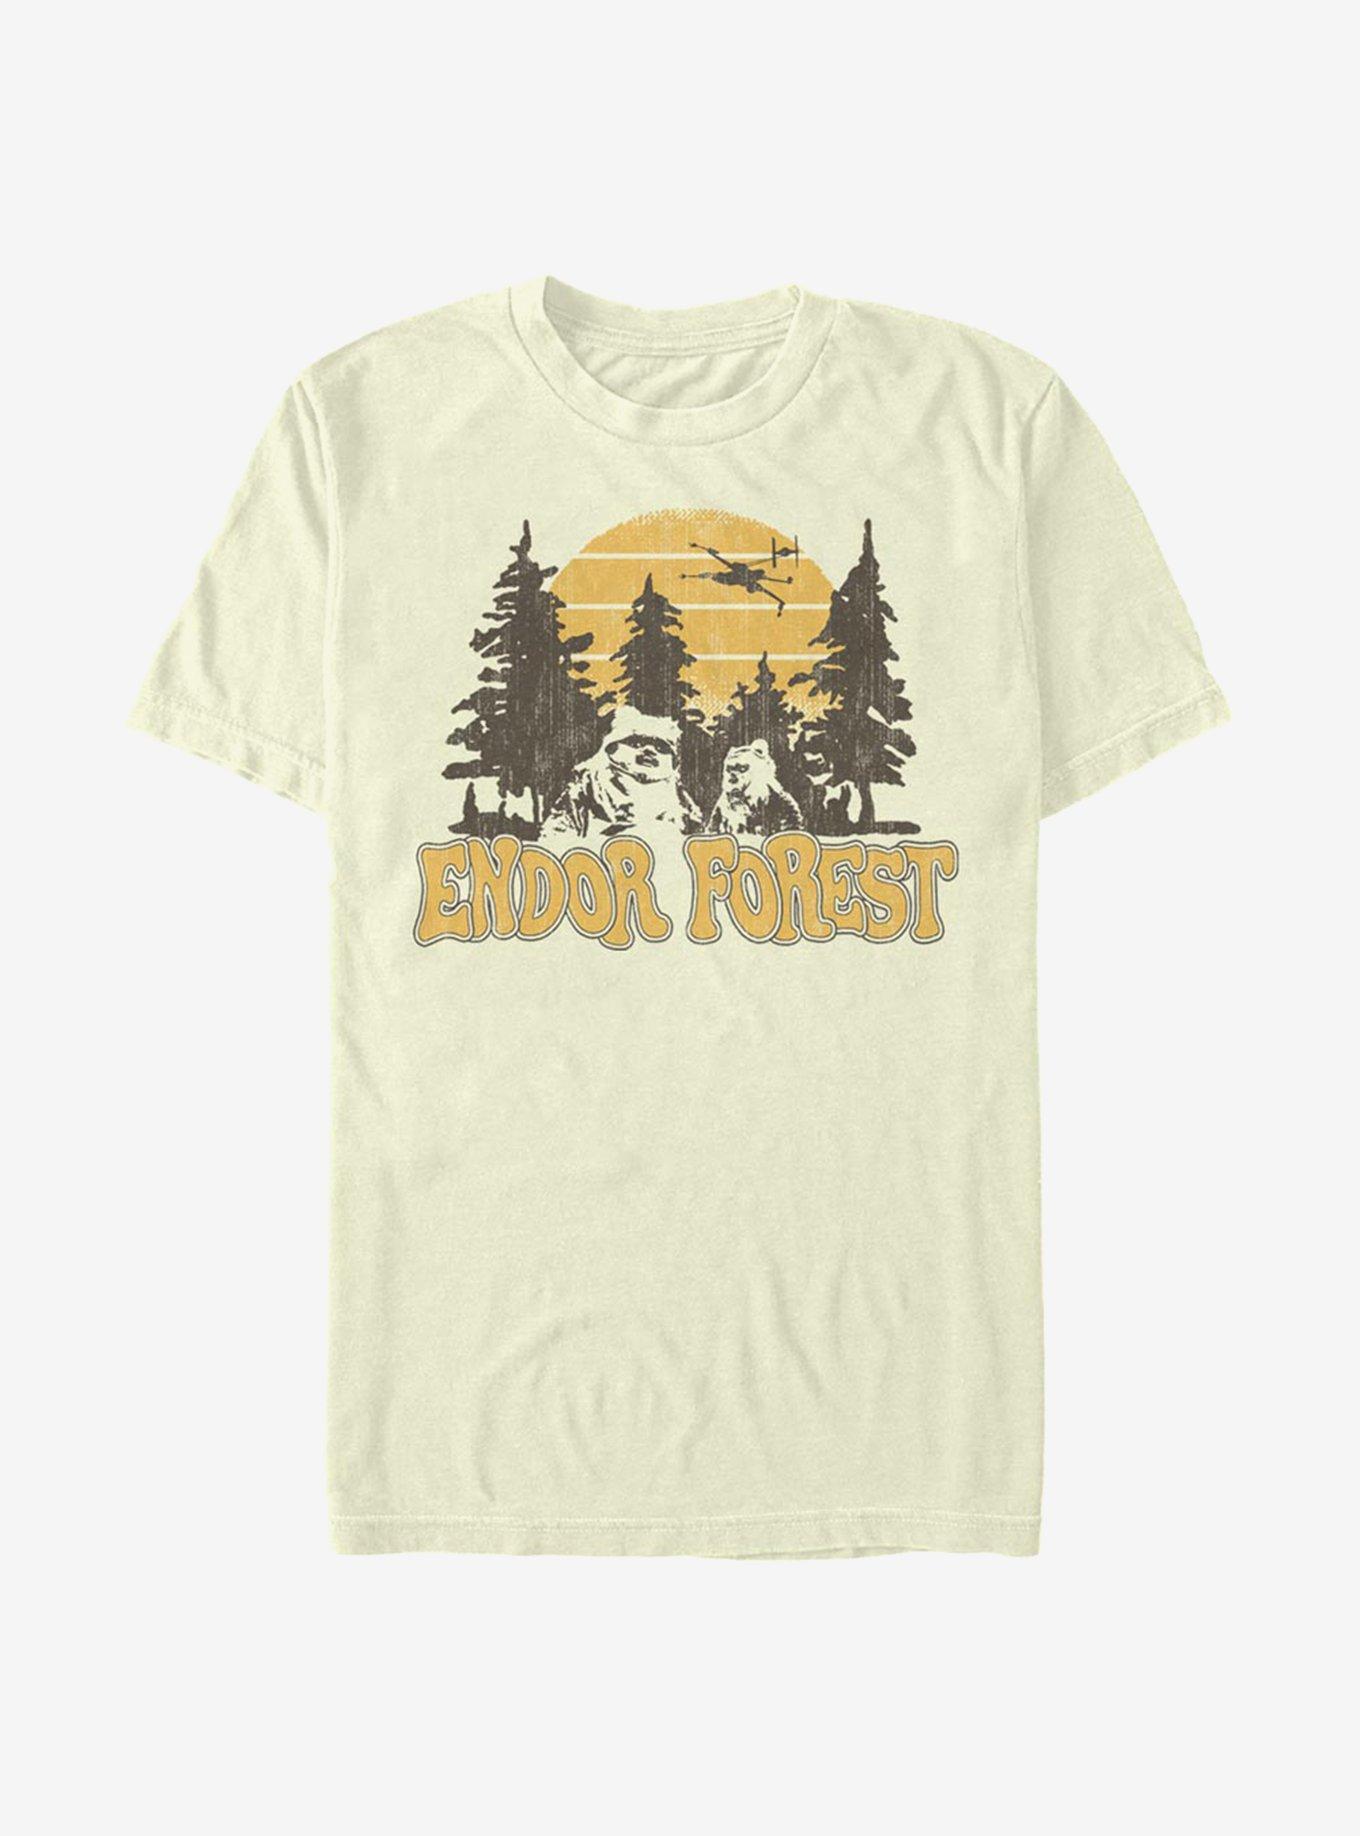 Star Wars Endor Forest T-Shirt, NATURAL, hi-res